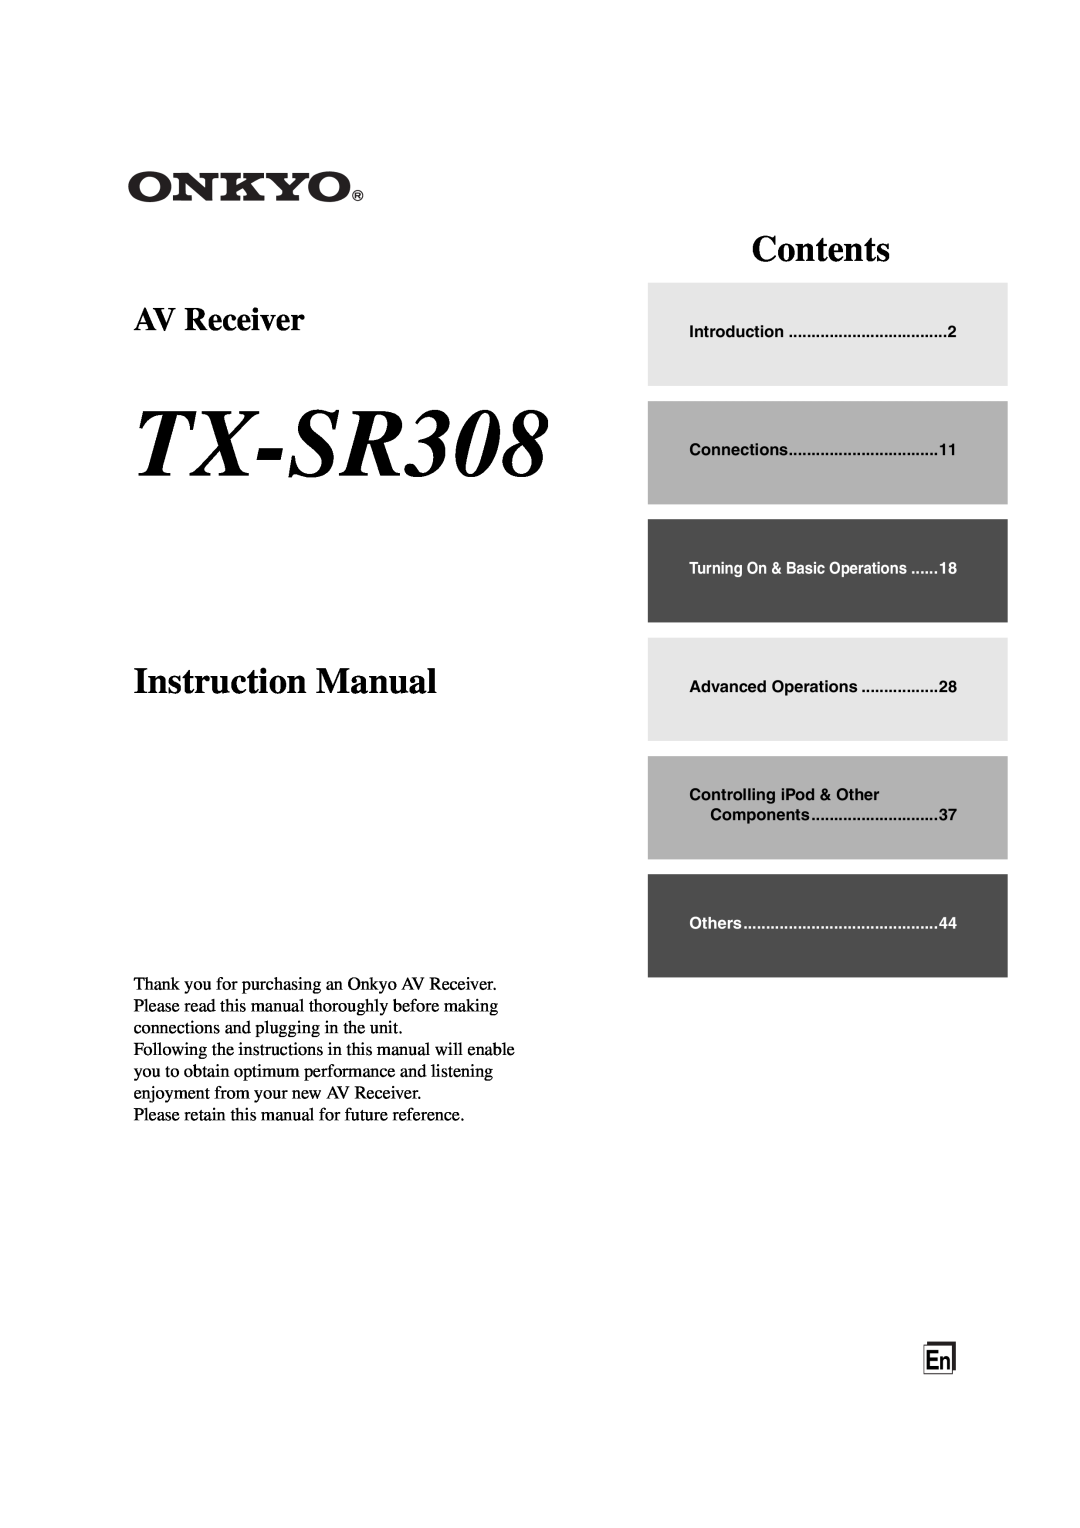 Onkyo instruction manual TX-SR308, Contents, AV Receiver 